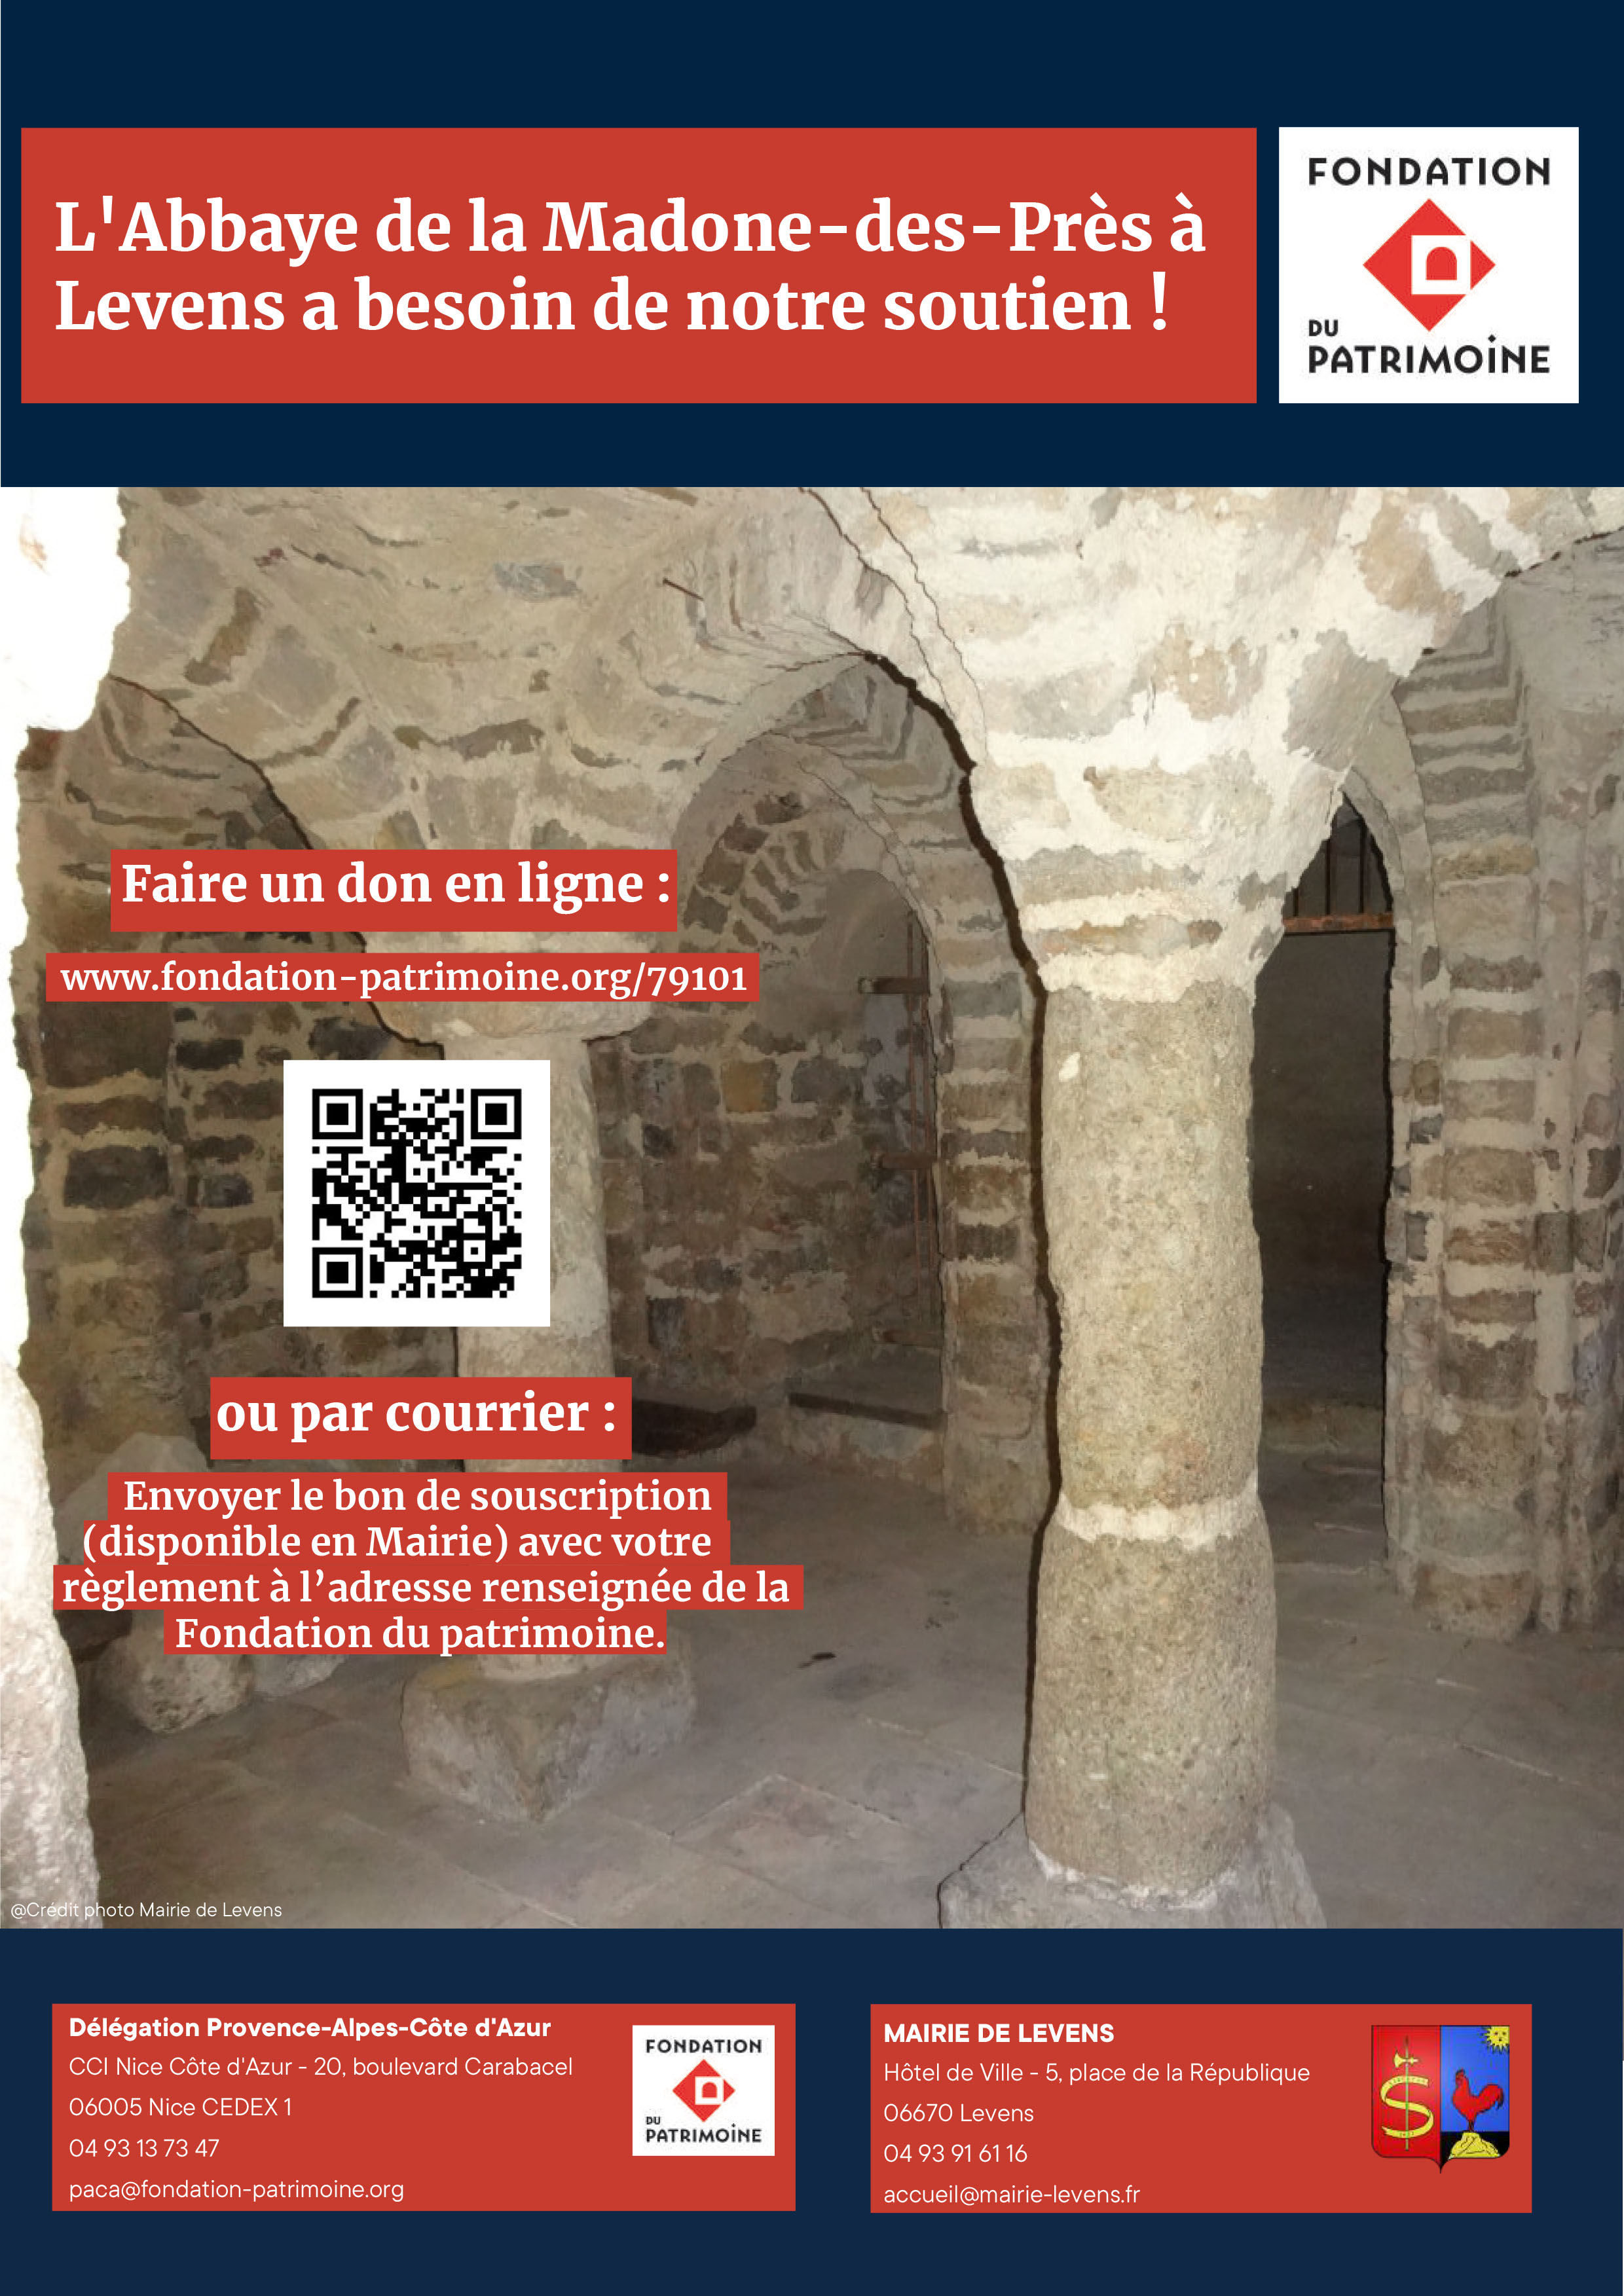 La Fondation du patrimoine lance une collecte pour financer la restauration de l’Abbaye de la Madone des Prés